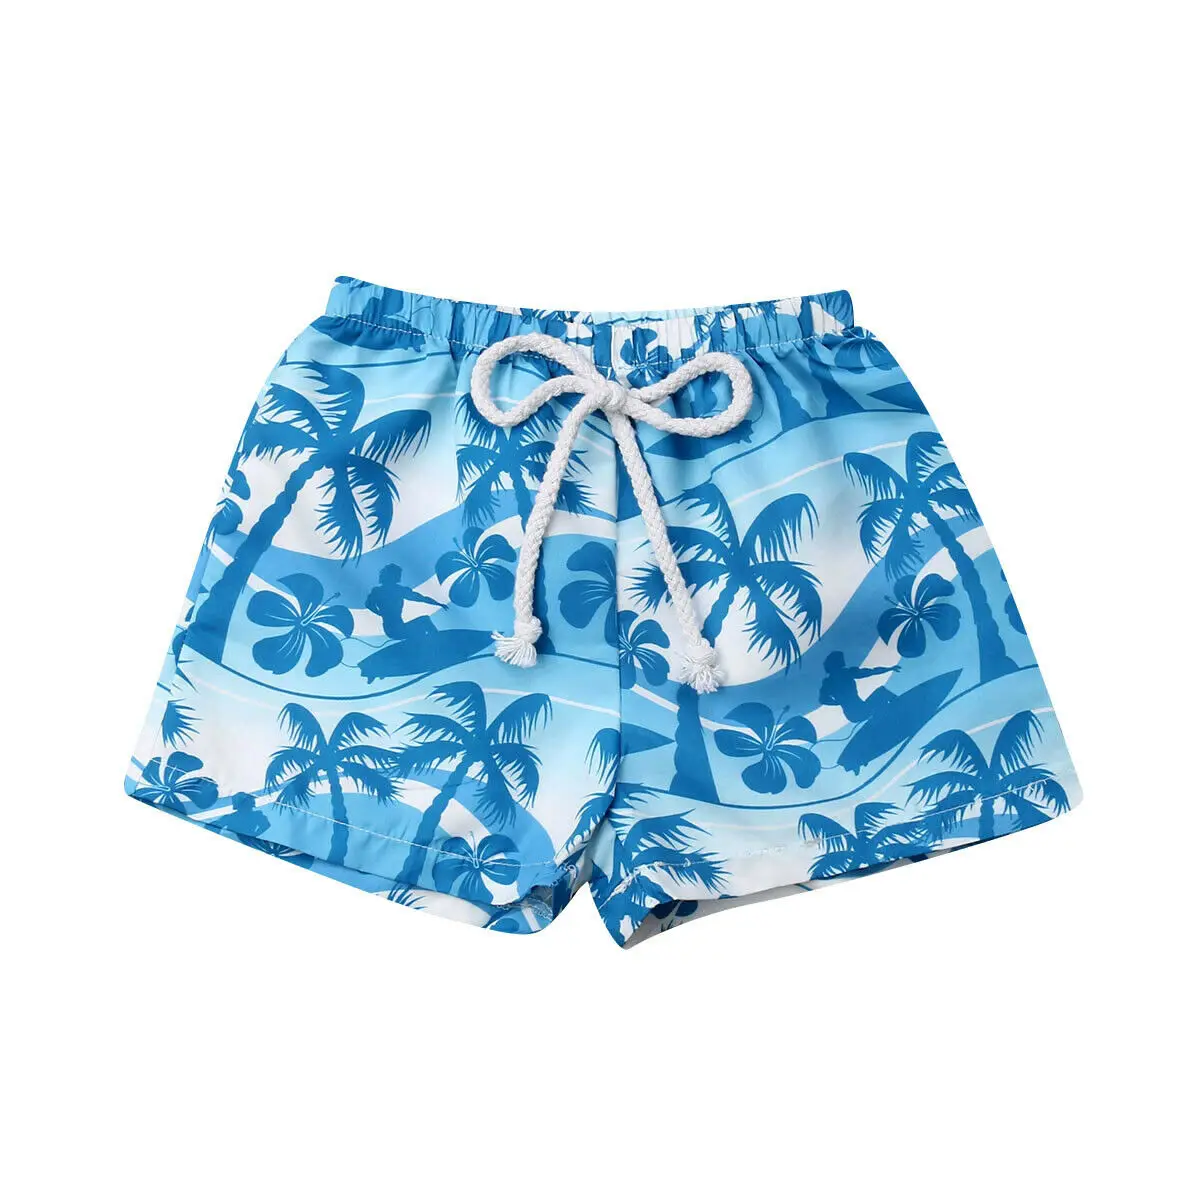 Г. Новые брендовые Гавайские шорты с эластичным поясом для маленьких мальчиков летние пляжные шорты От 6 месяцев до 4 лет с принтом парусника и дерева - Цвет: Синий